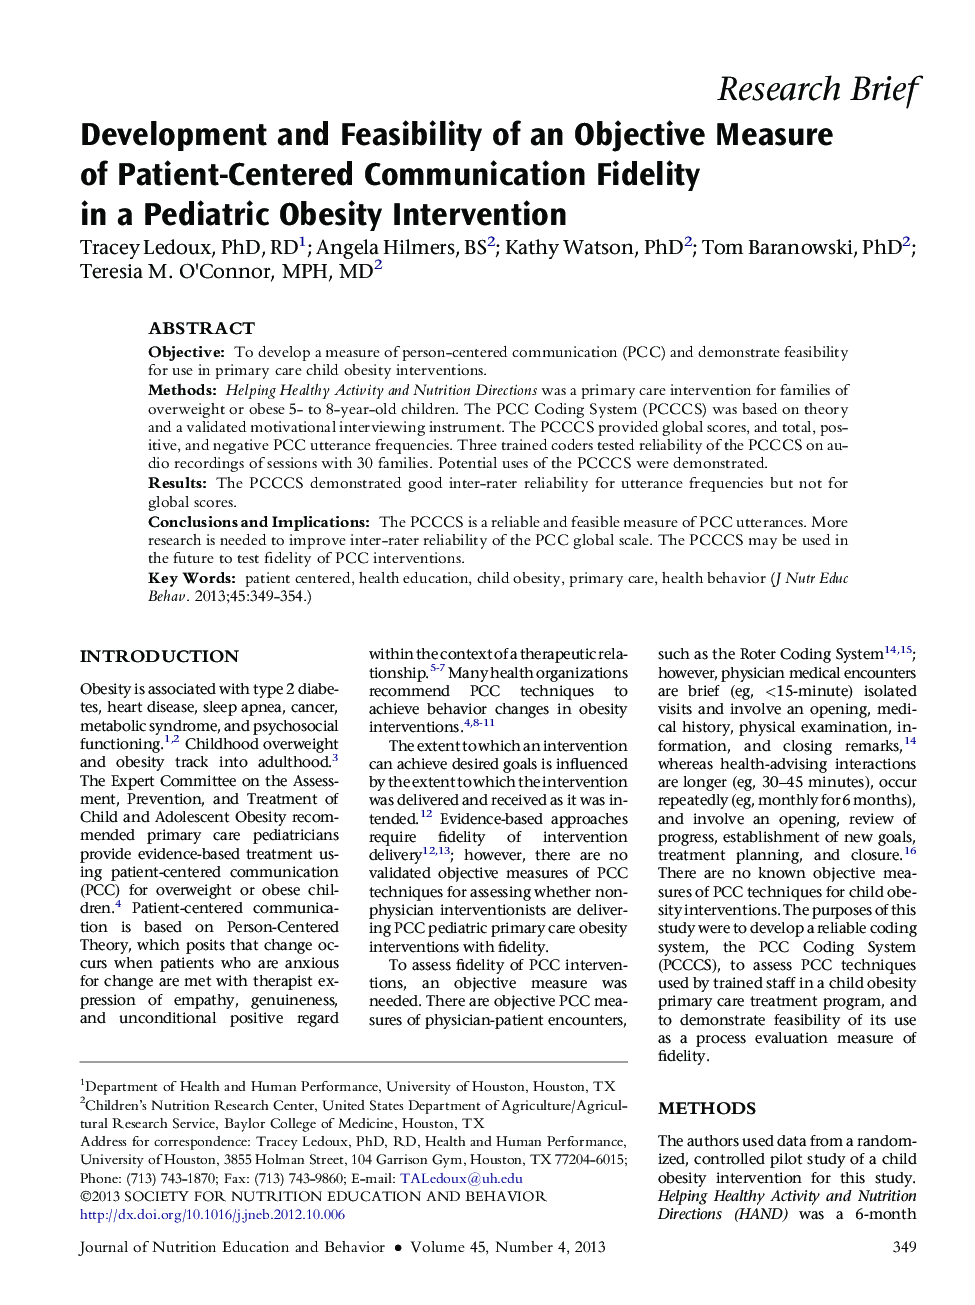 توسعه و امکان سنجی اندازه گیری هدف بیمار محور از ارتباطات وفادار در یک مداخله چاقی کودکان 